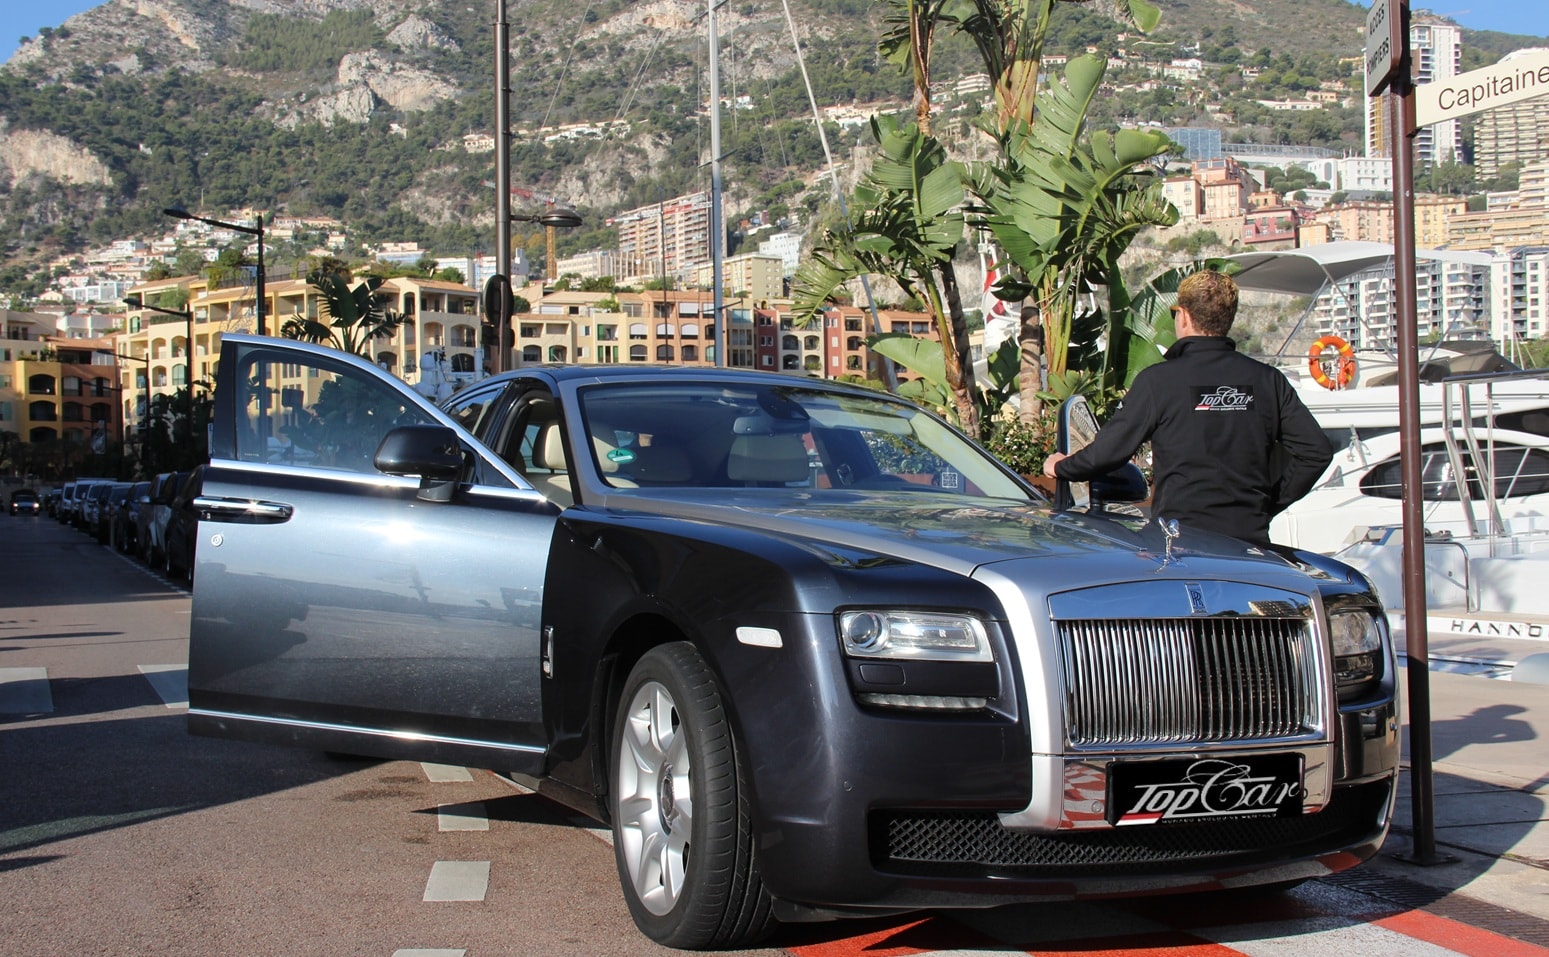 Servizio di noleggio auto con autista nella Riviera francese, Francia. Affitta una Rolls a Monaco, Nizza, Cannes, Saint Tropez con TOP CAR MONACO. Un economico noleggio di auto di prestigio!